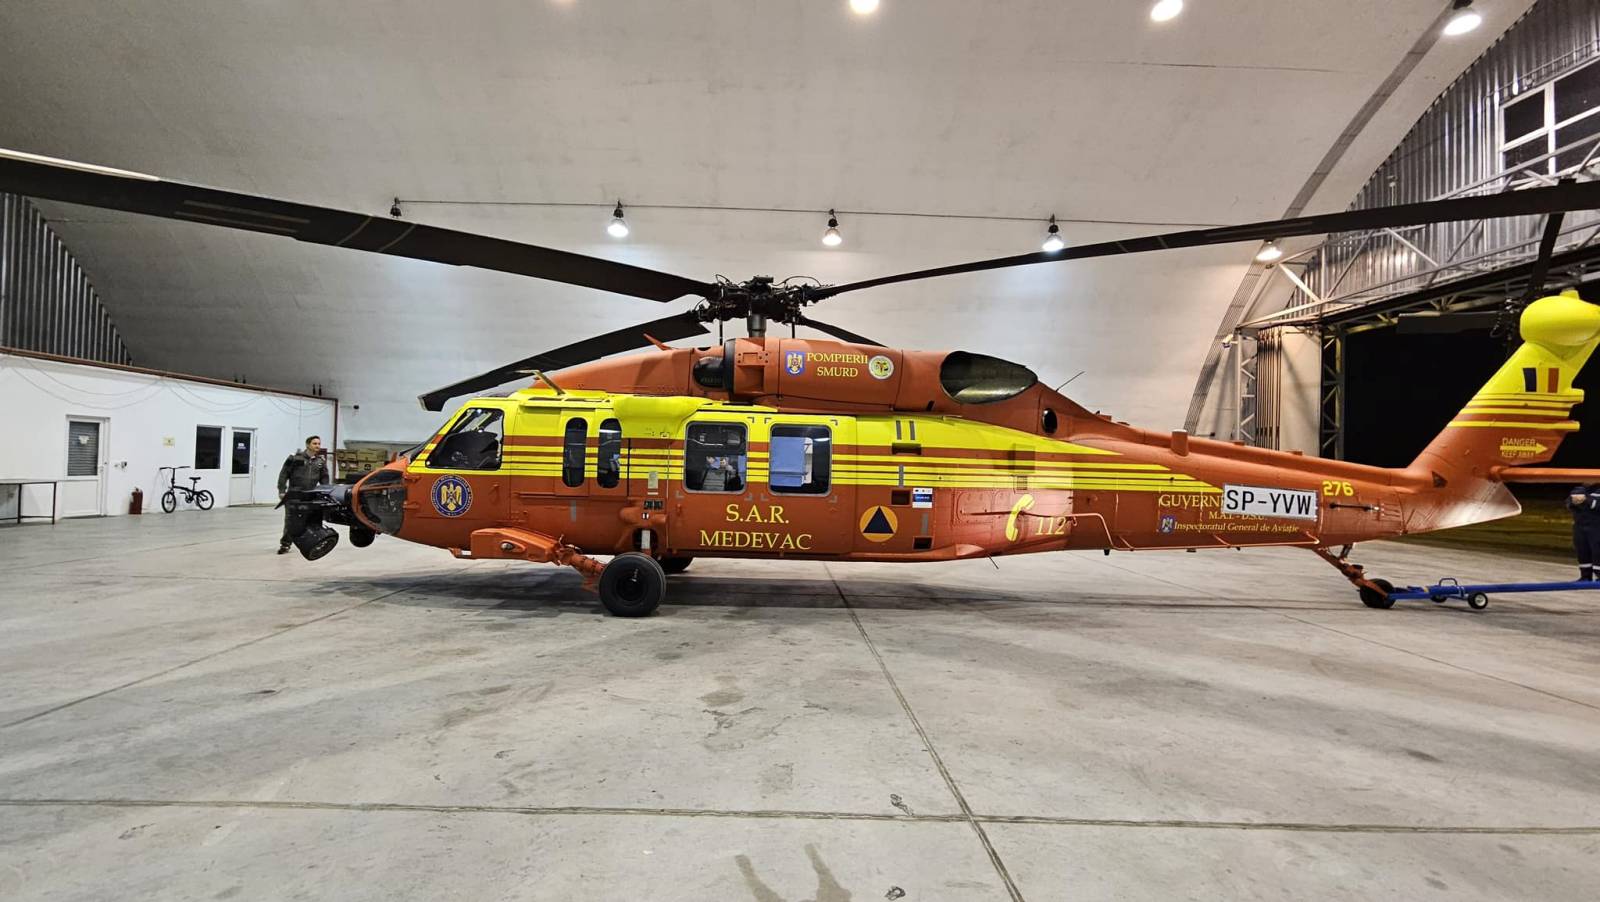 DSU Rumänien gibt den Erhalt eines neuen Black Hawk-Hubschraubers bekannt. VIDEO